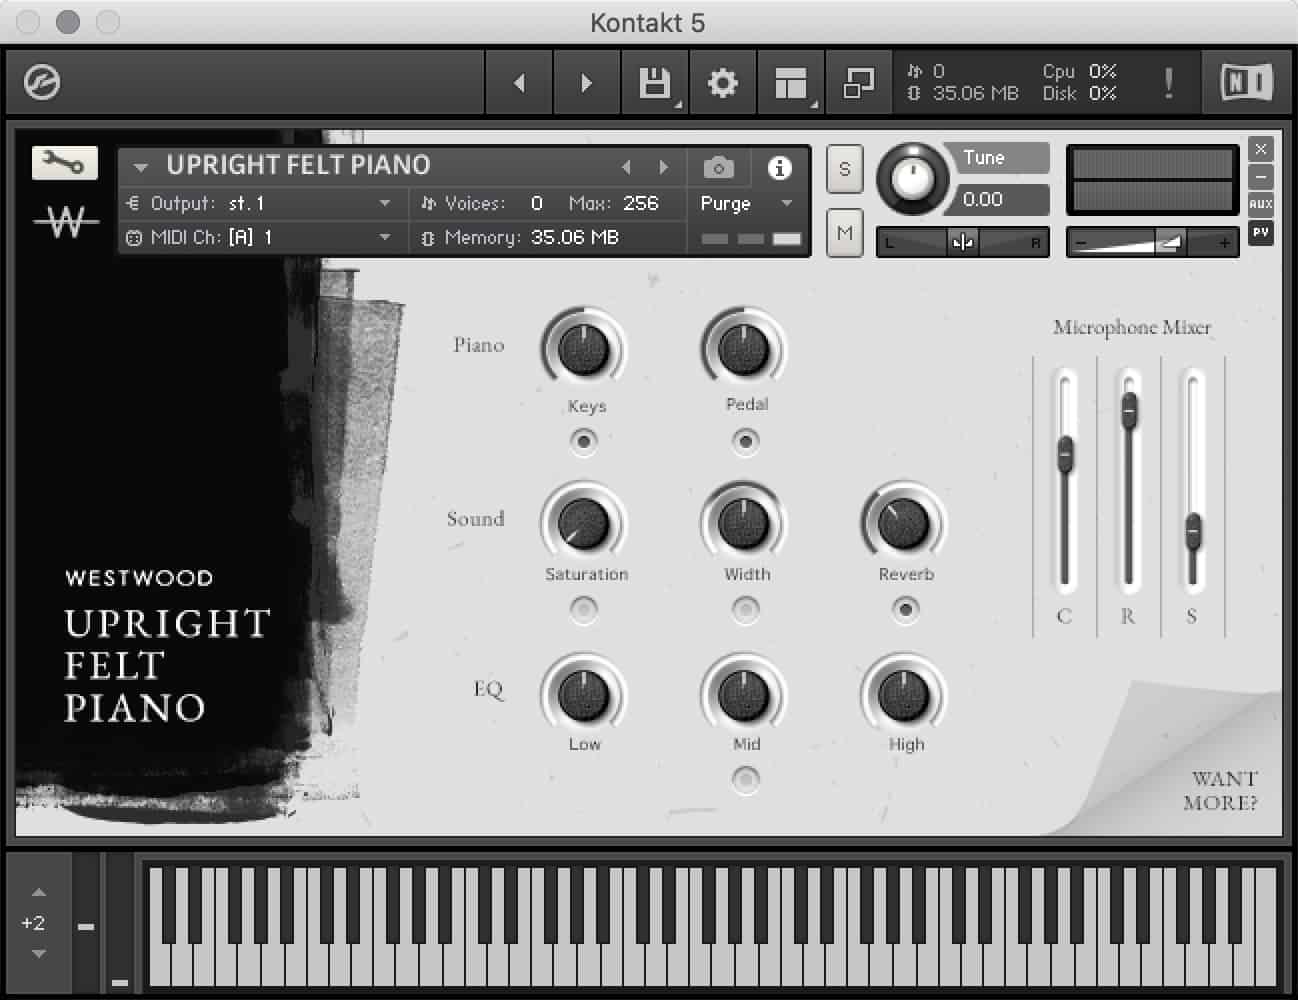 Westwood’s UPRIGHT FELT PIANO v4.0 Update